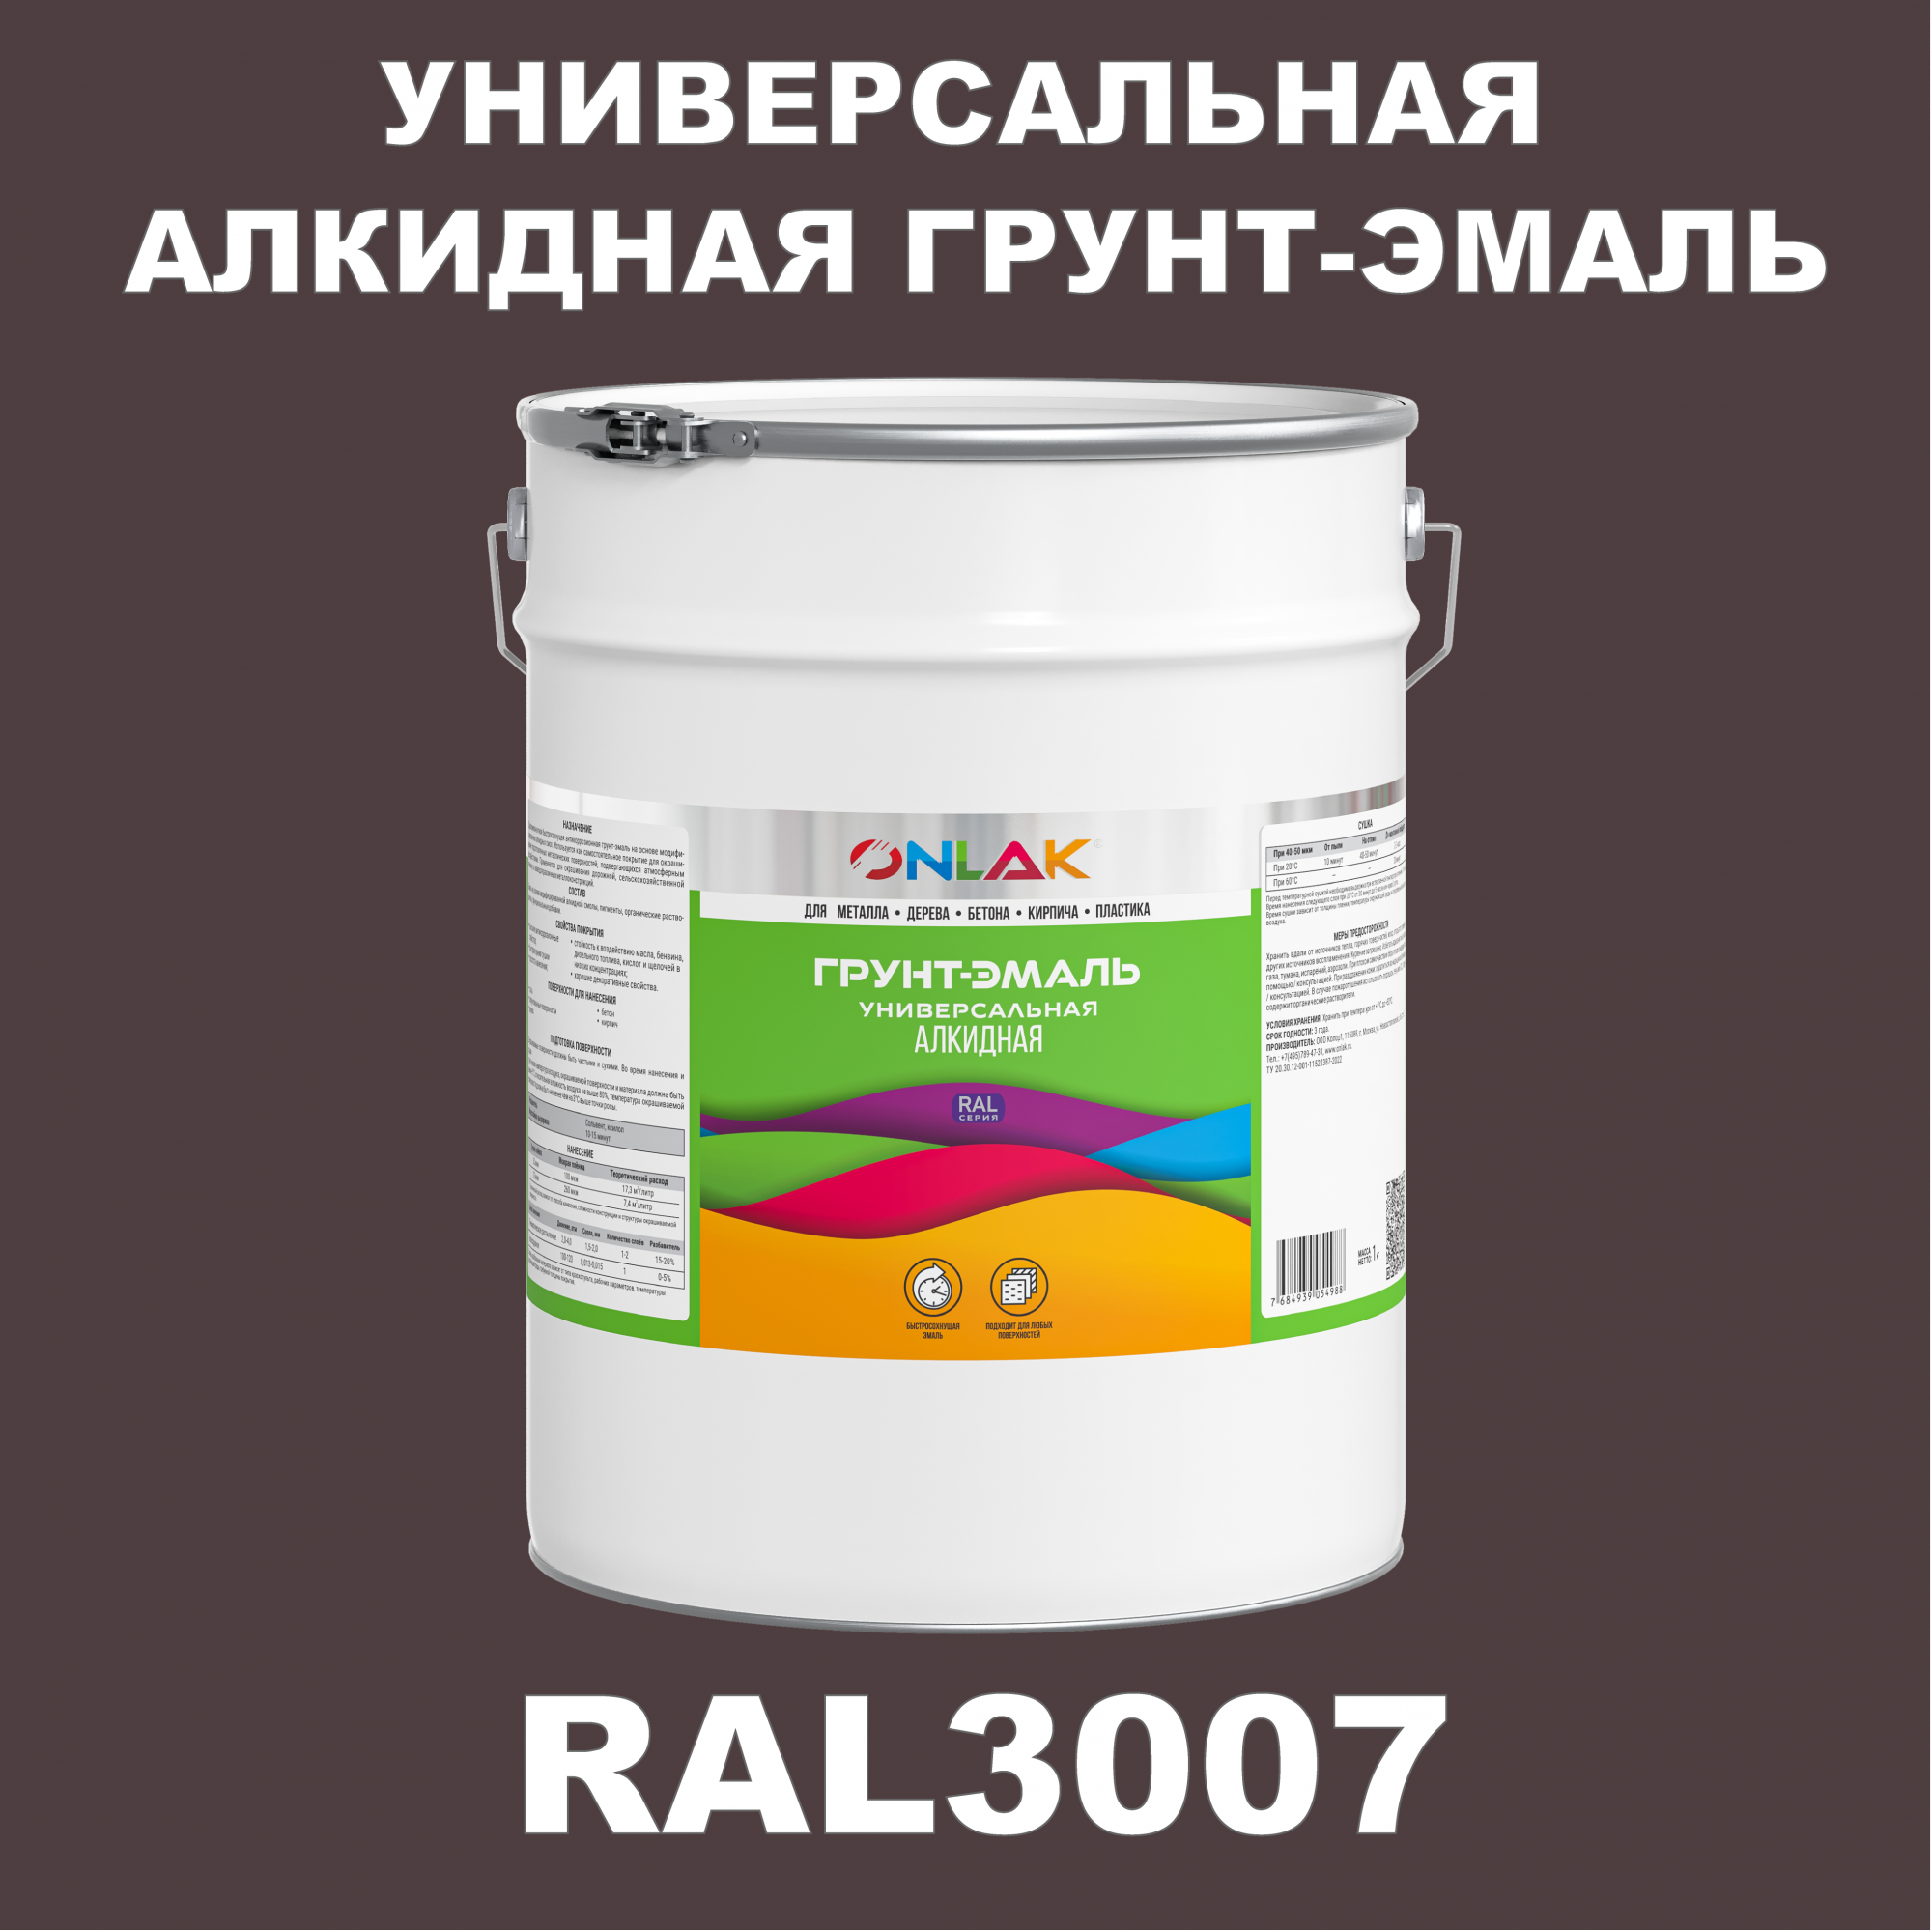 Грунт-эмаль ONLAK 1К RAL3007 антикоррозионная алкидная по металлу по ржавчине 20 кг